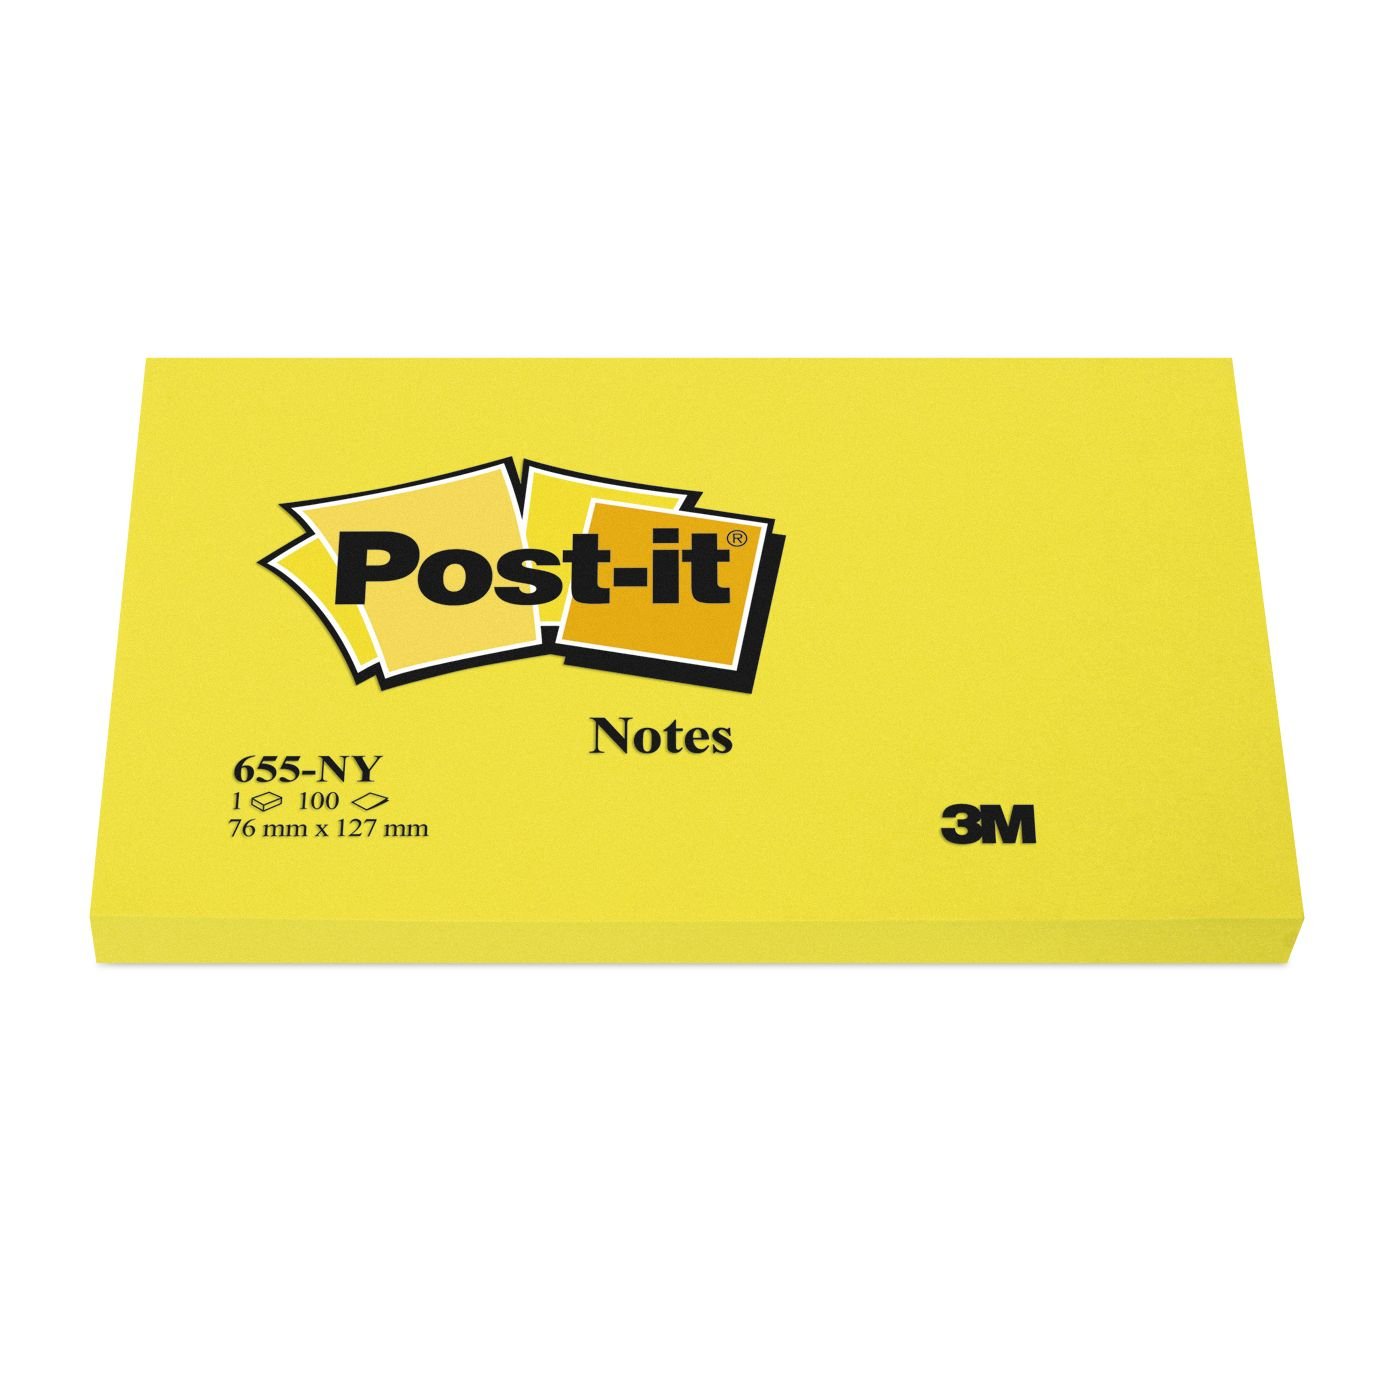 Post-it 655-ny 76x127 giallo neon